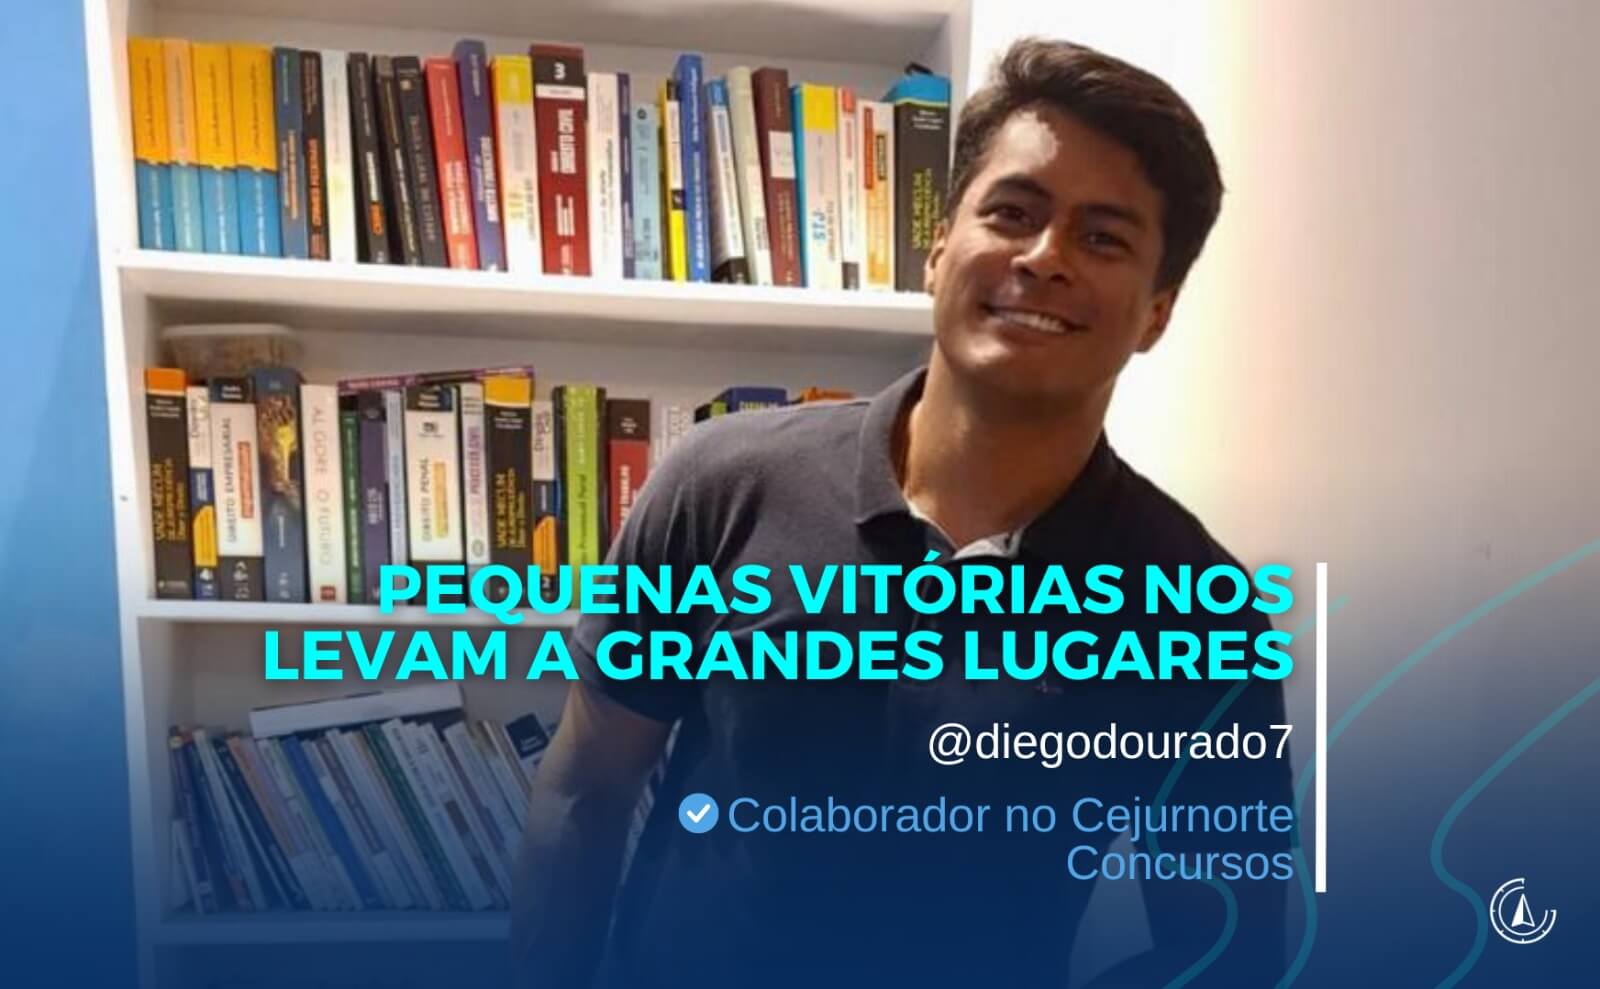 ''PEQUENAS VITRIAS NOS LEVAM A GRANDES LUGARES'' - Por Diego Dourado